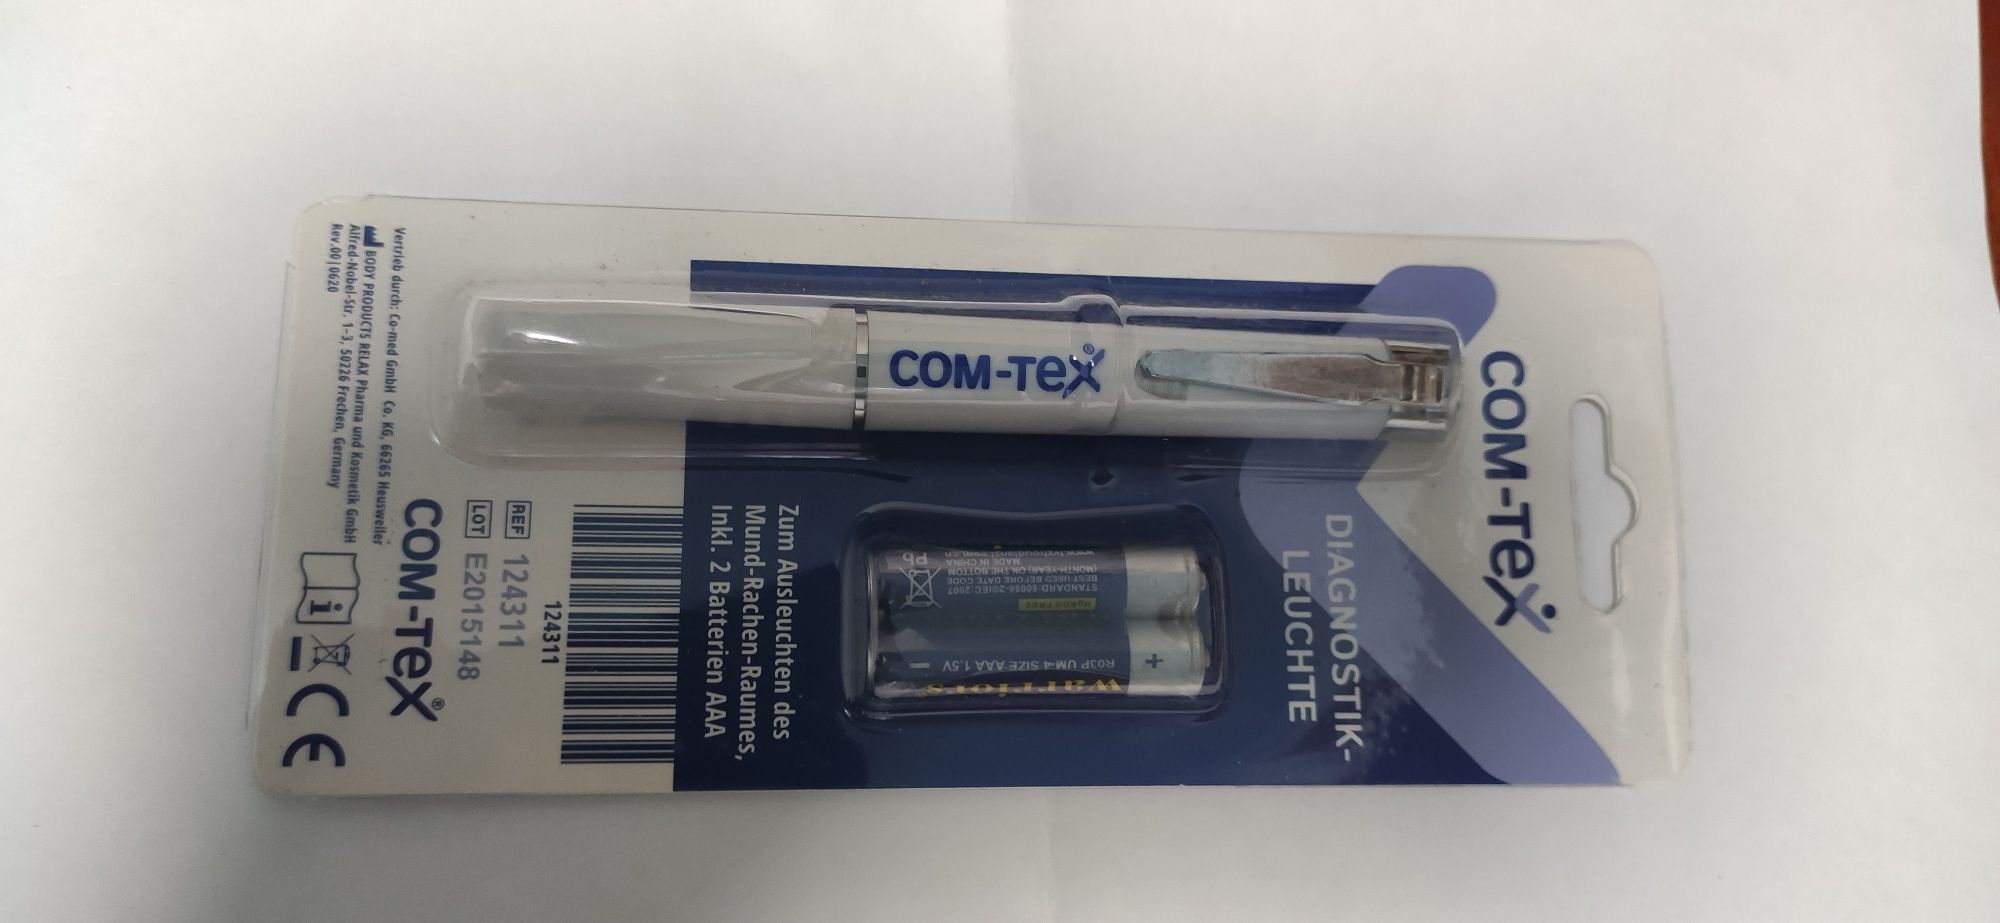 Медицинский диагностический светильник COM-TeX